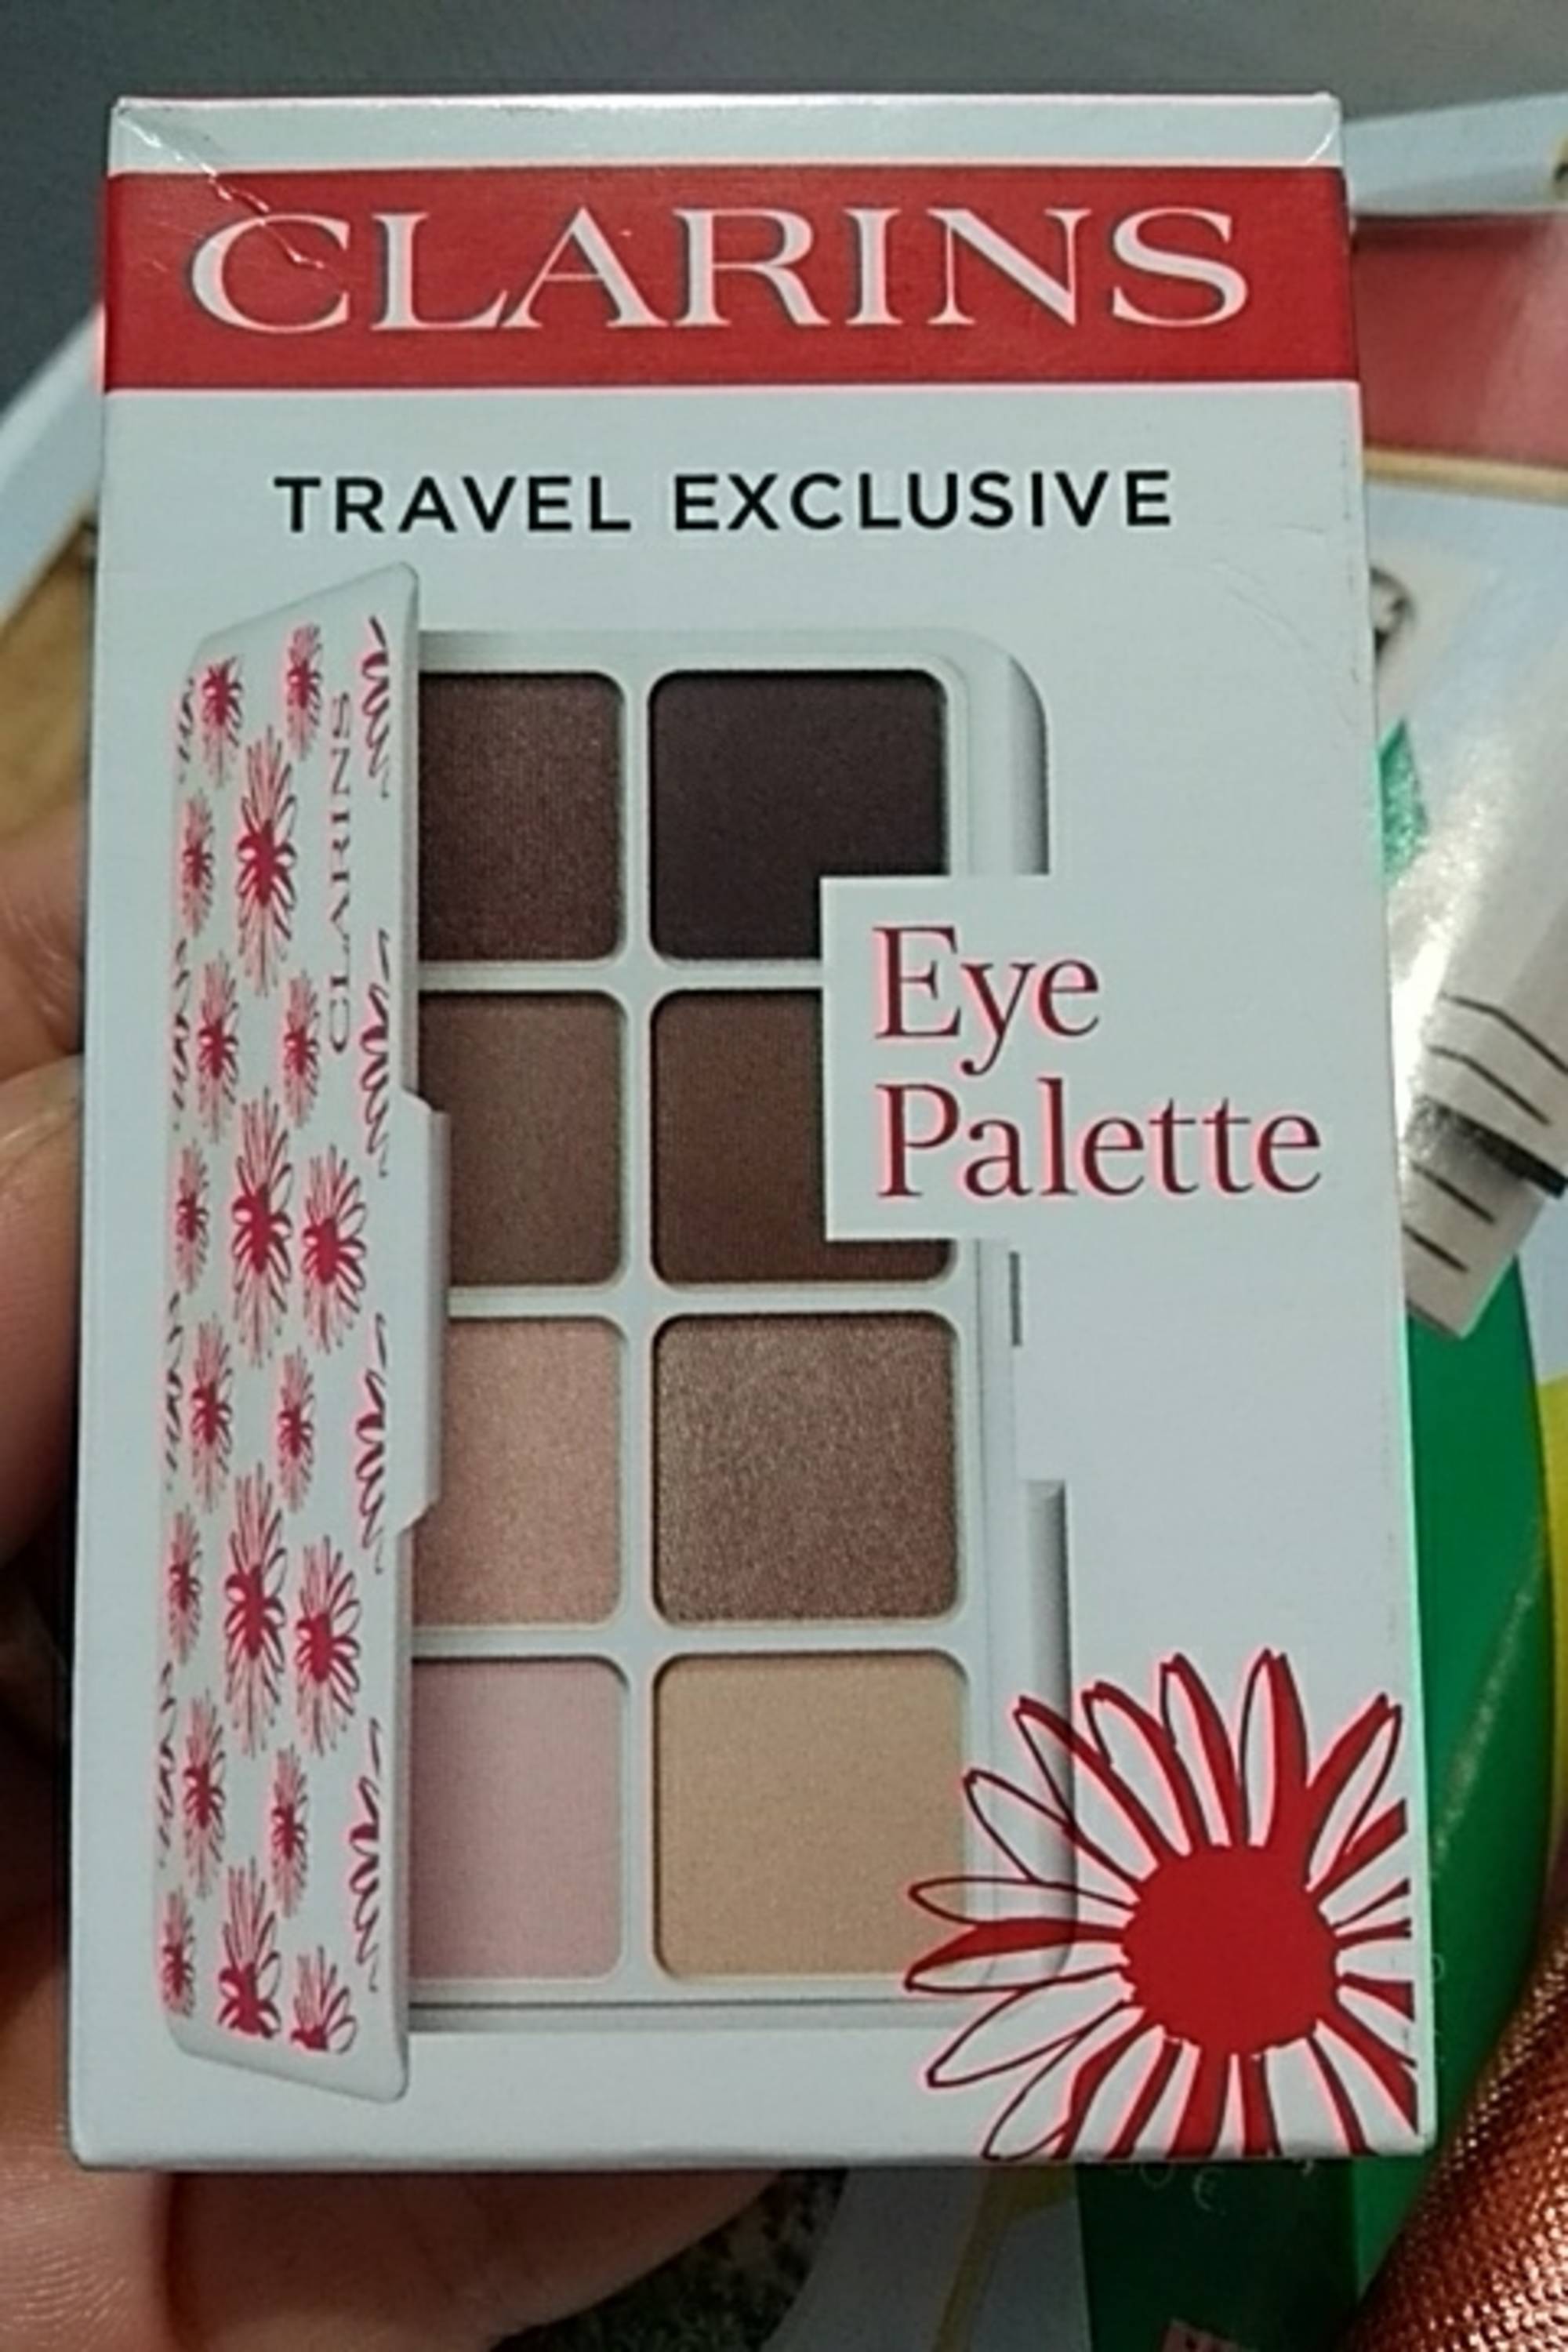 CLARINS - Travel exclusive - Eye palette